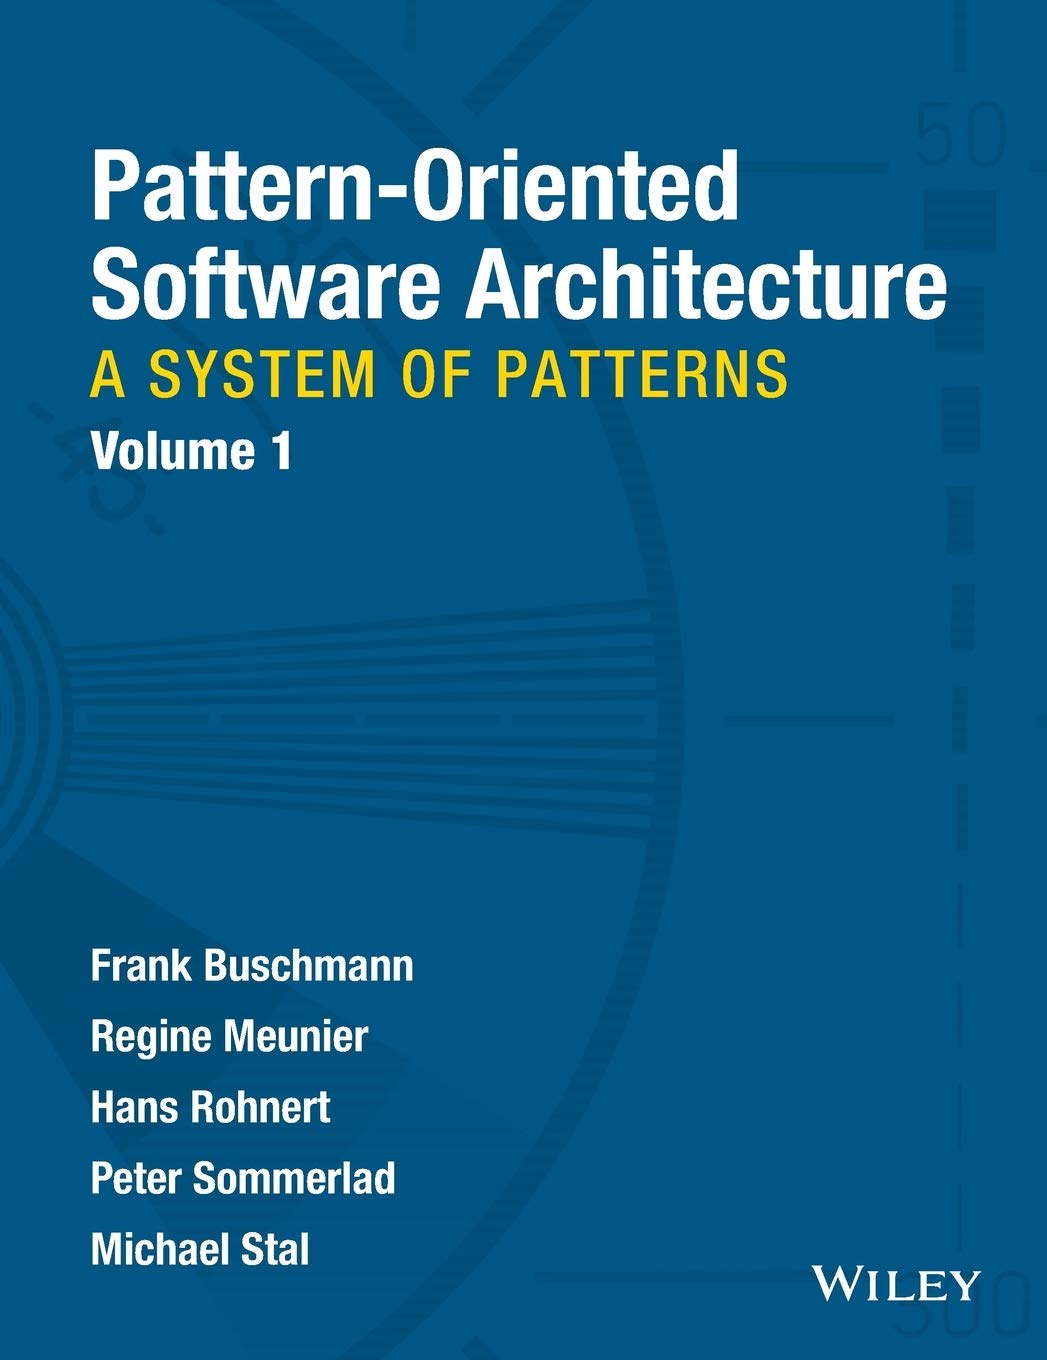 Обложка книги «Архитектура программного обеспечения, ориентированная на шаблоны»